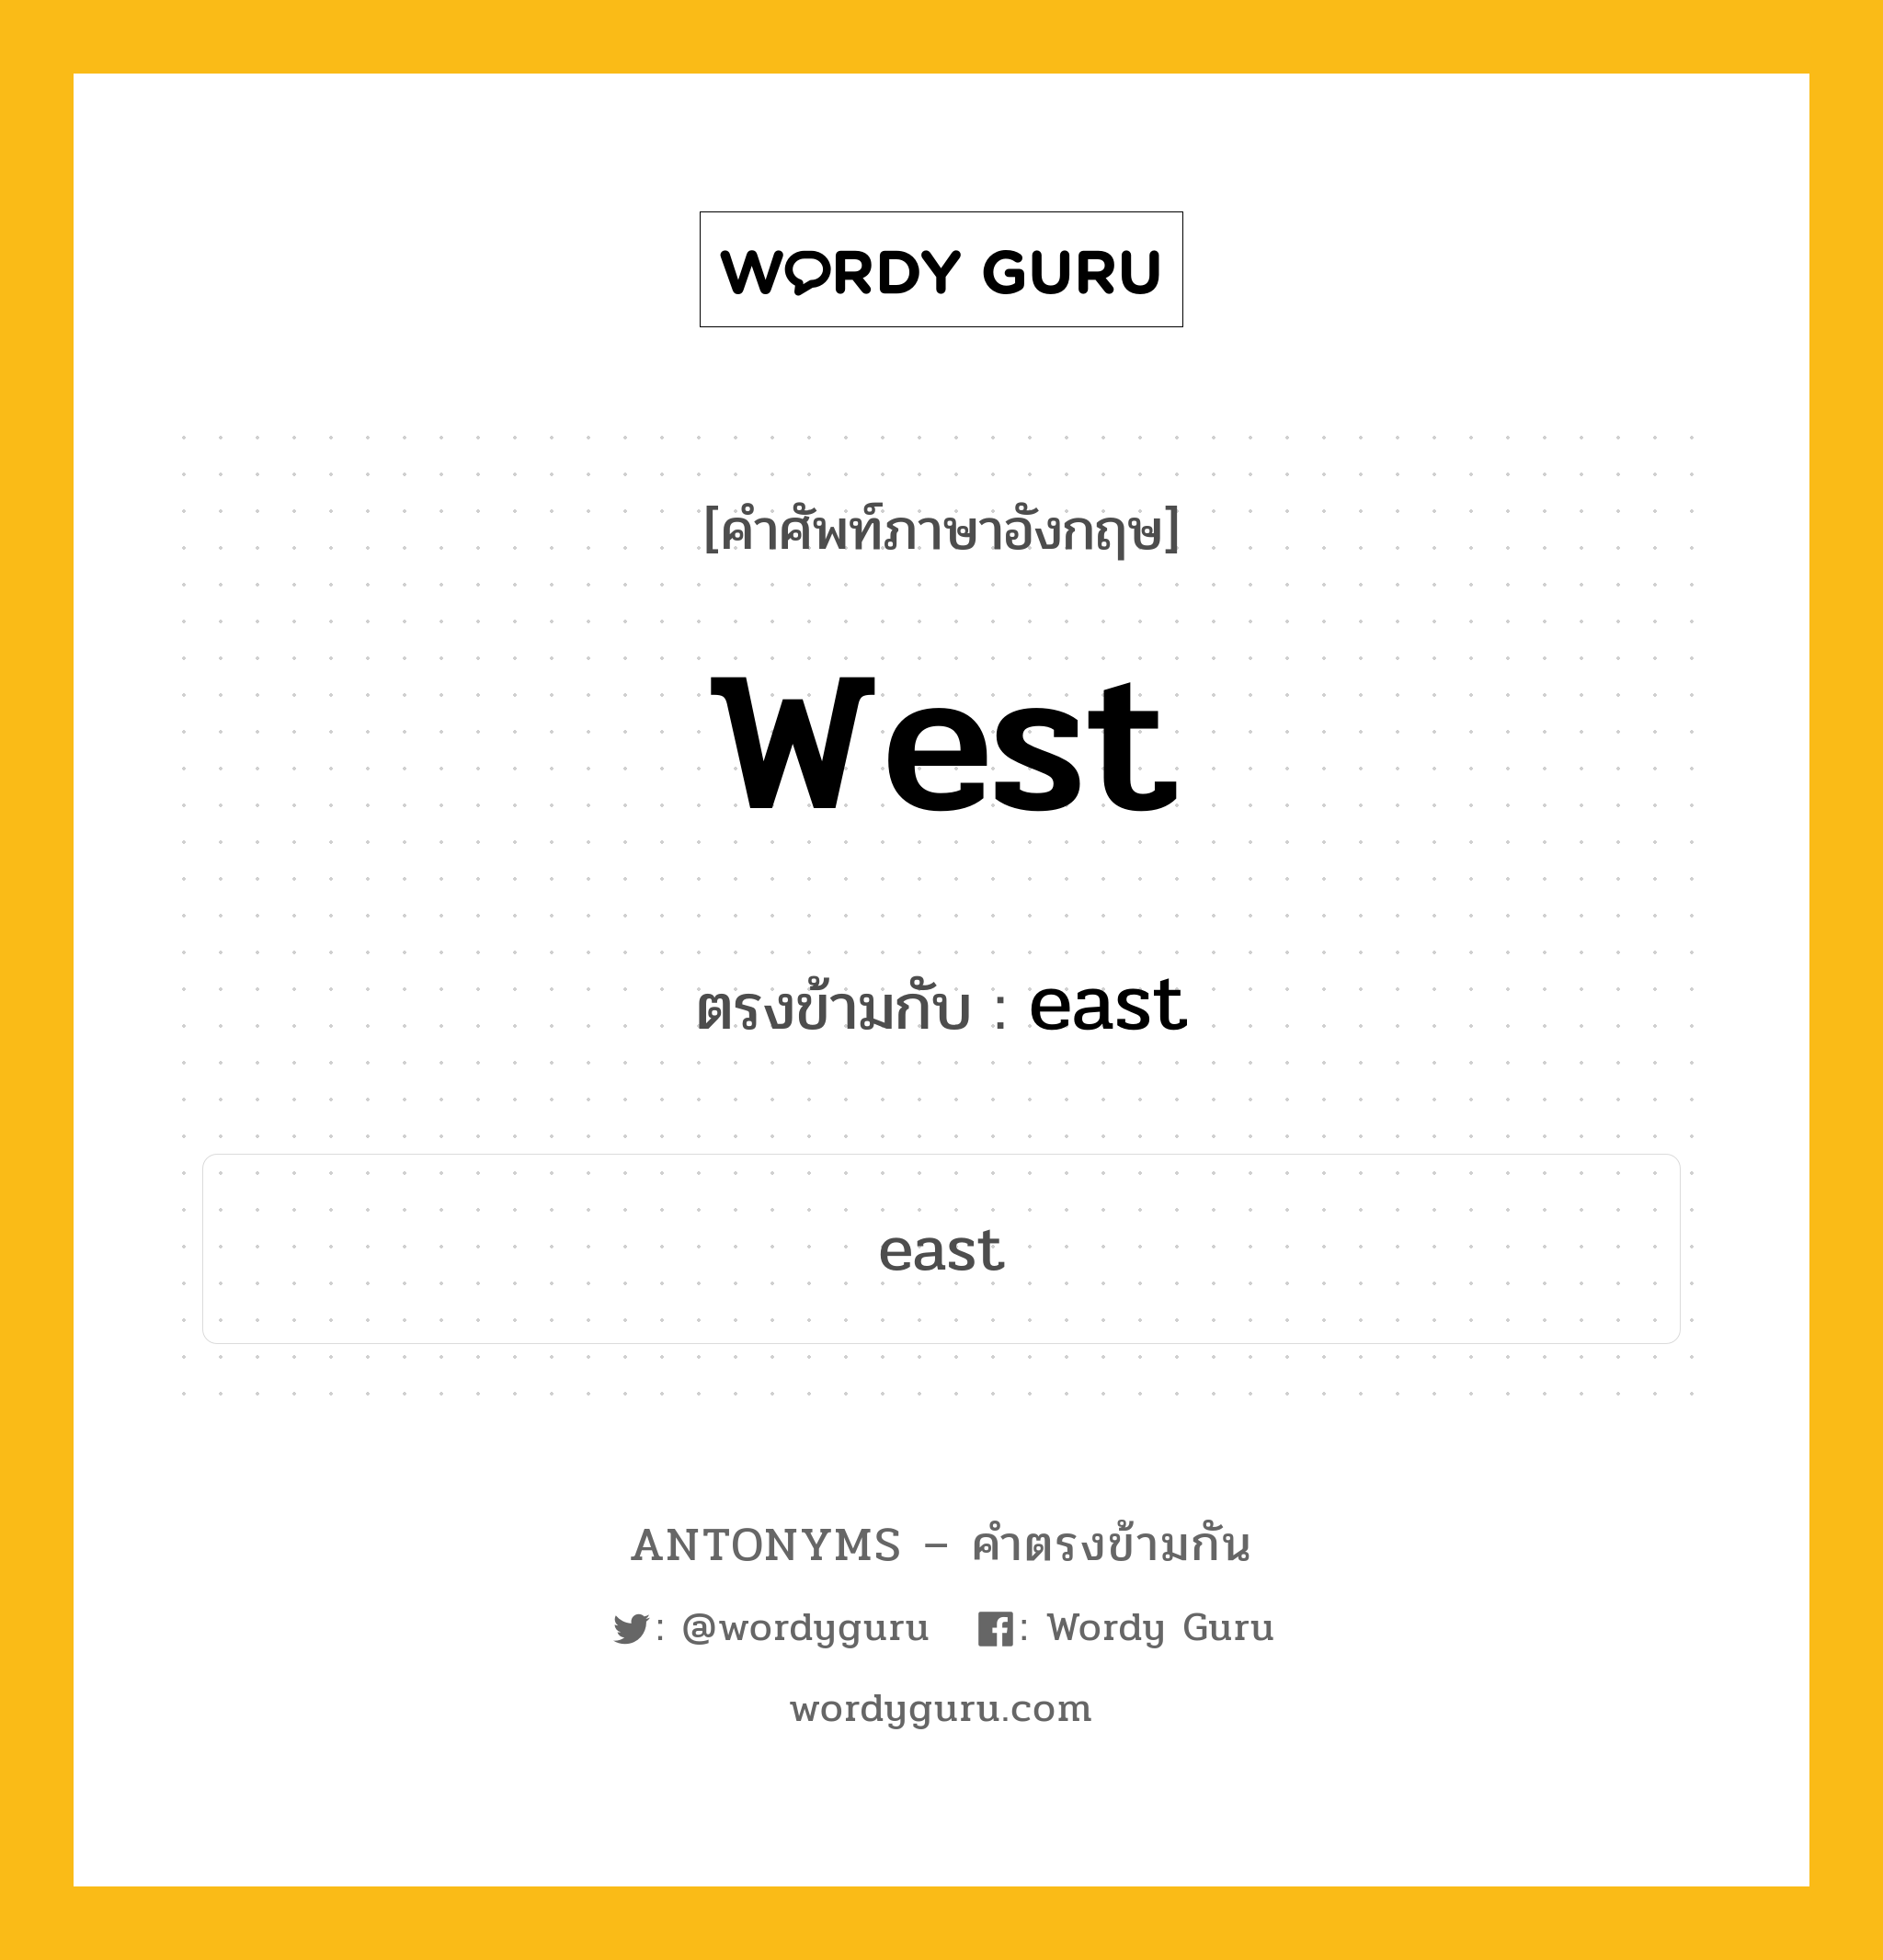 west เป็นคำตรงข้ามกับคำไหนบ้าง?, คำศัพท์ภาษาอังกฤษ west ตรงข้ามกับ east หมวด east